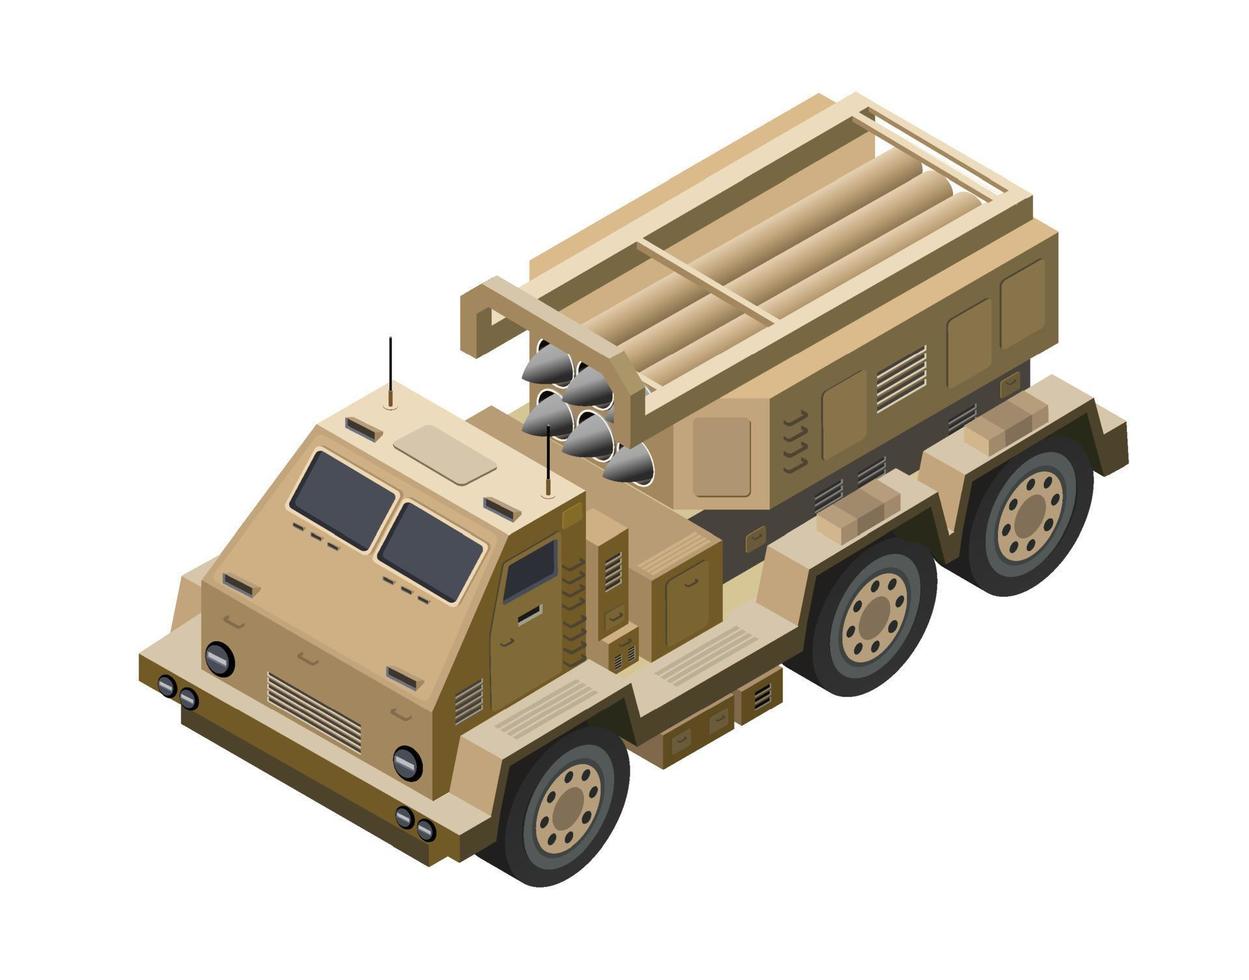 meerdere lancering raket systemen leger voertuigen leger raketten verdediging camouflage. isometrische 3d vector illustratie.